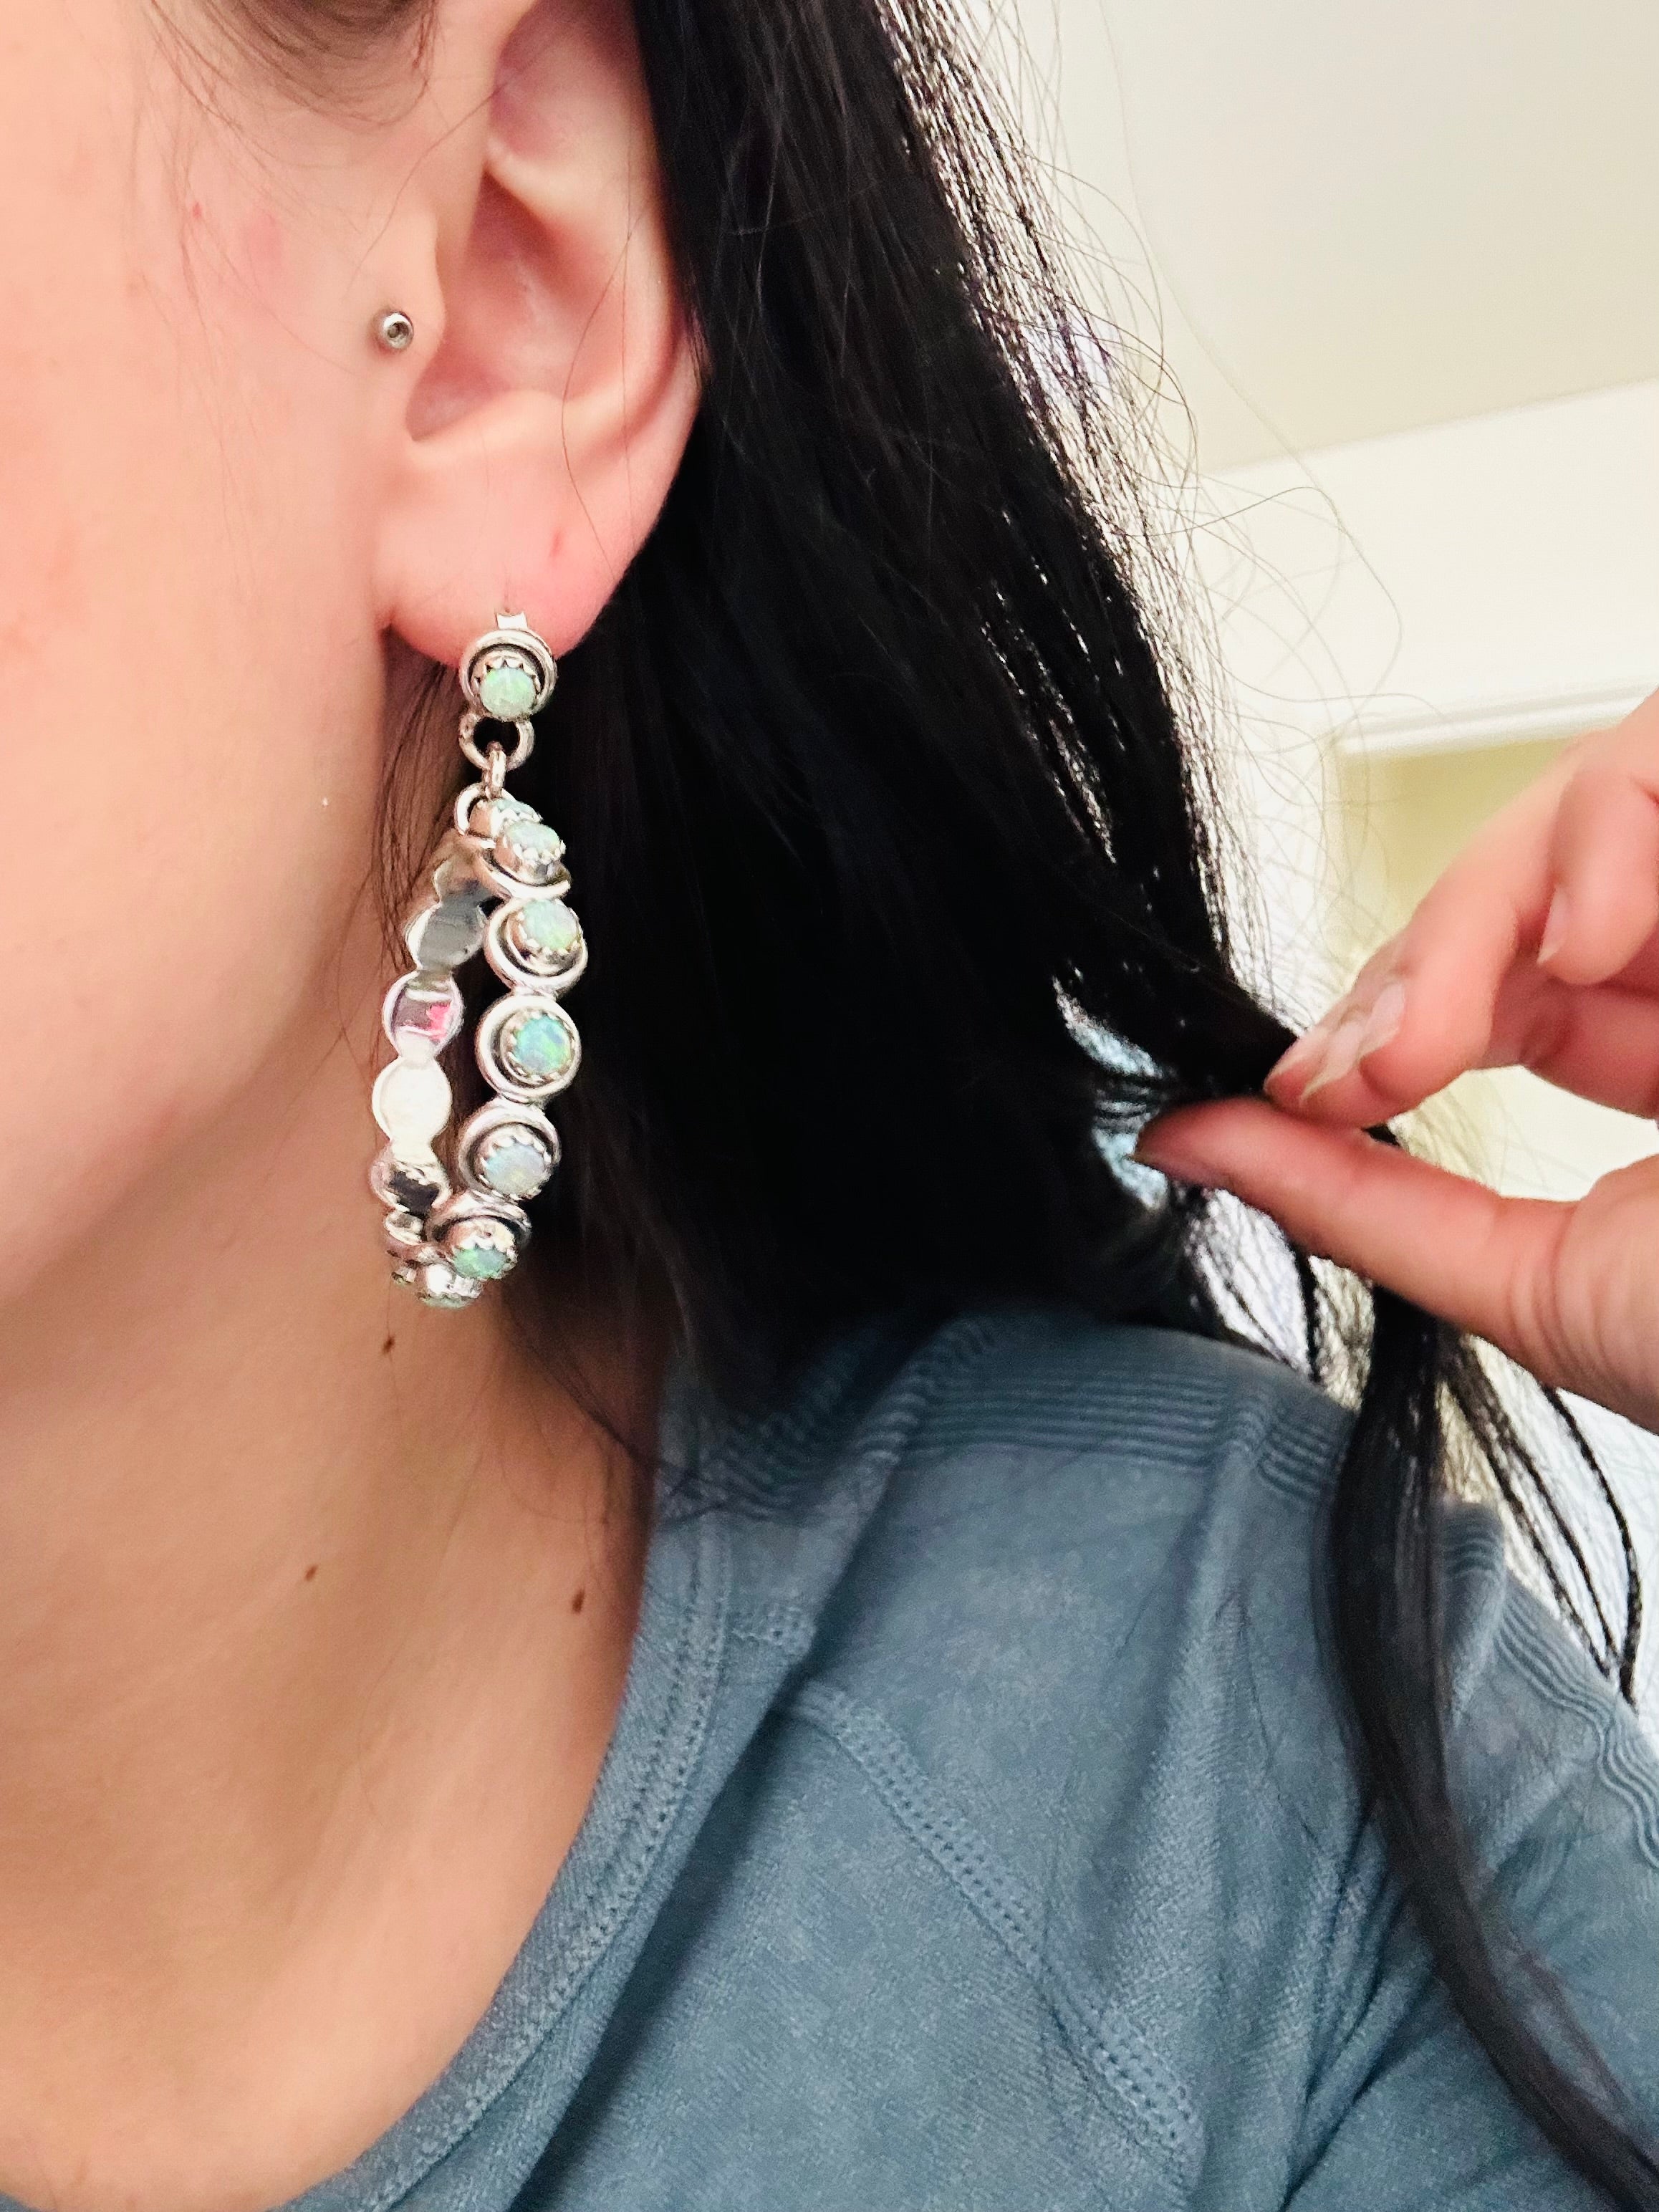 TTD “Ranchin” Blue Opal & Sterling Silver Earrings